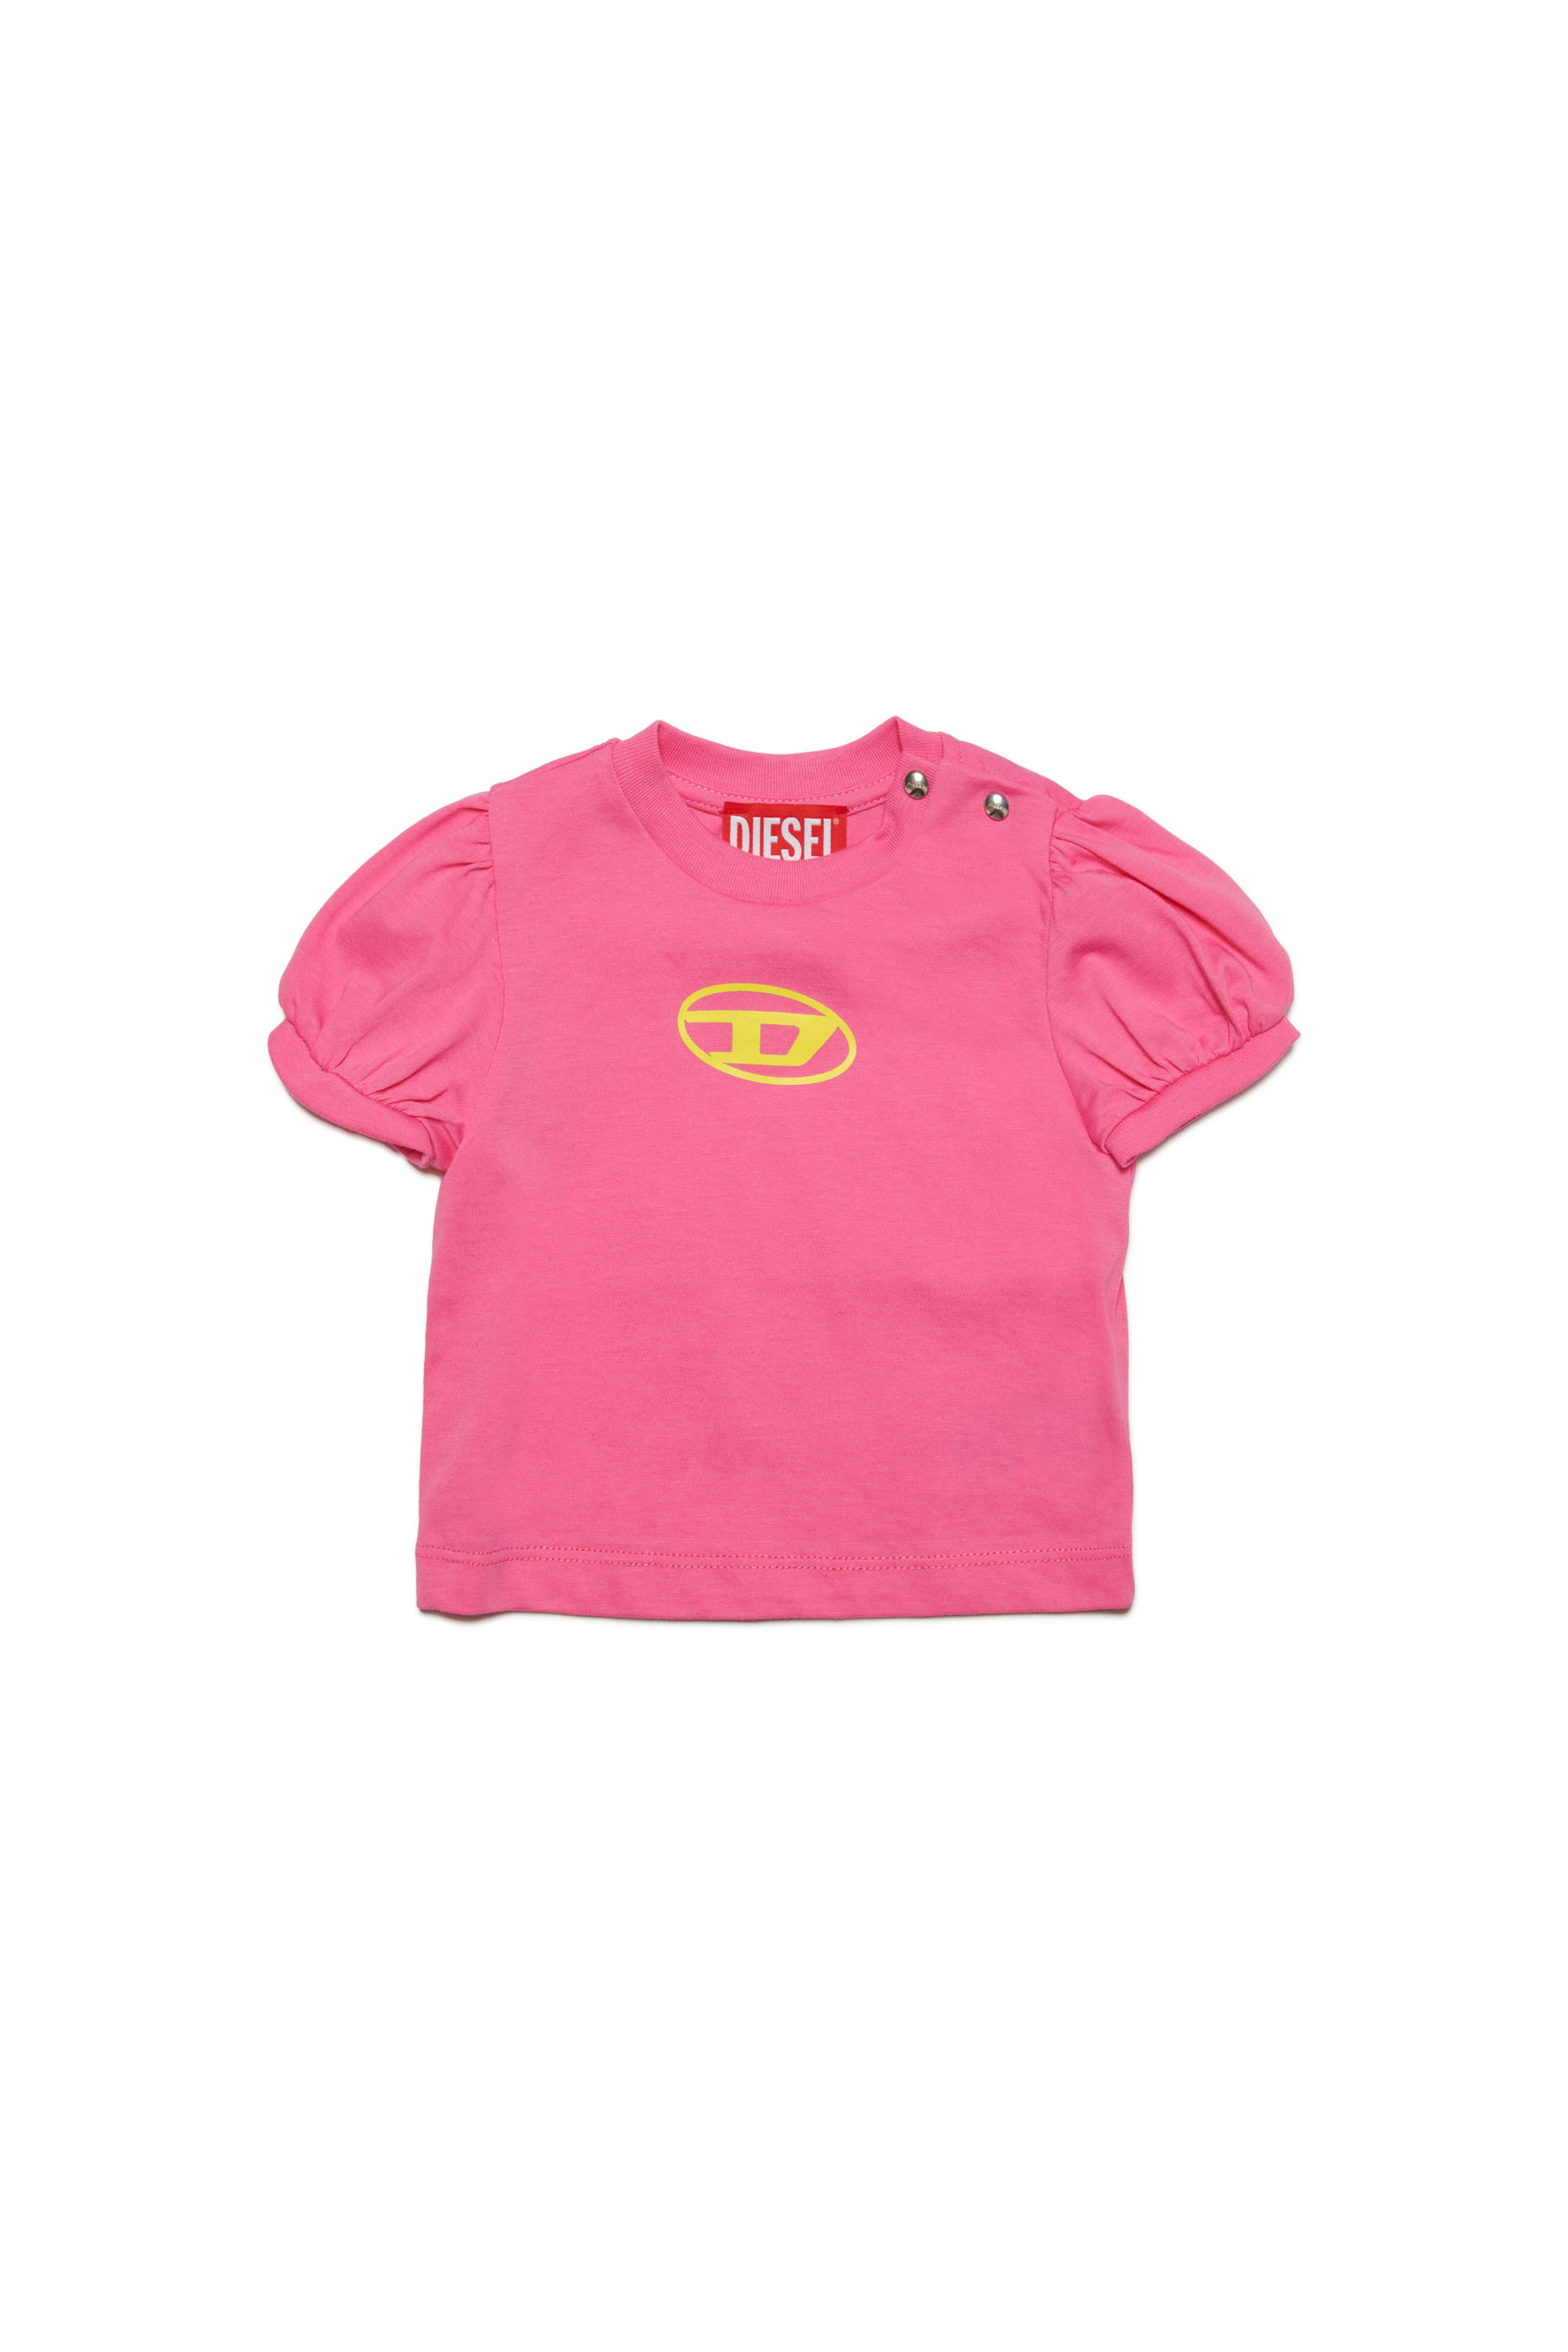 Diesel - Camiseta de mangas abullonadas con Oval D - Camisetas y Tops - Mujer - Rosa